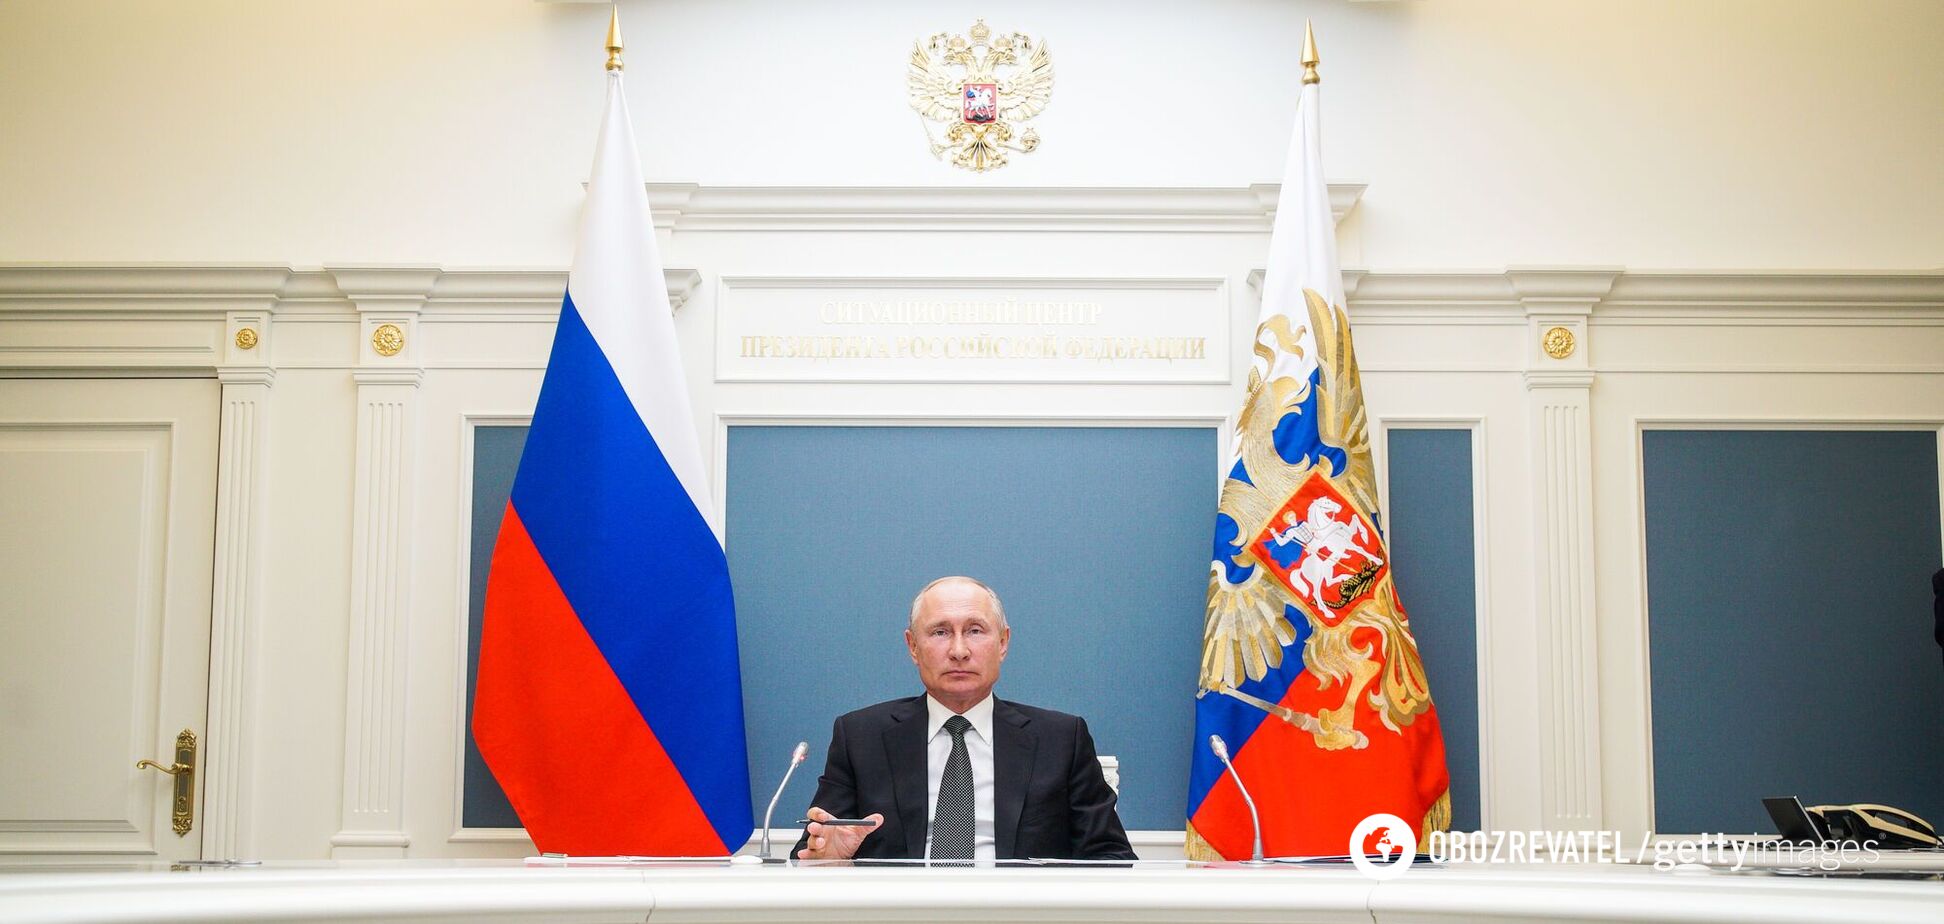 В последнее время участились слухи о плохом здоровье российского президента Владимира Путина